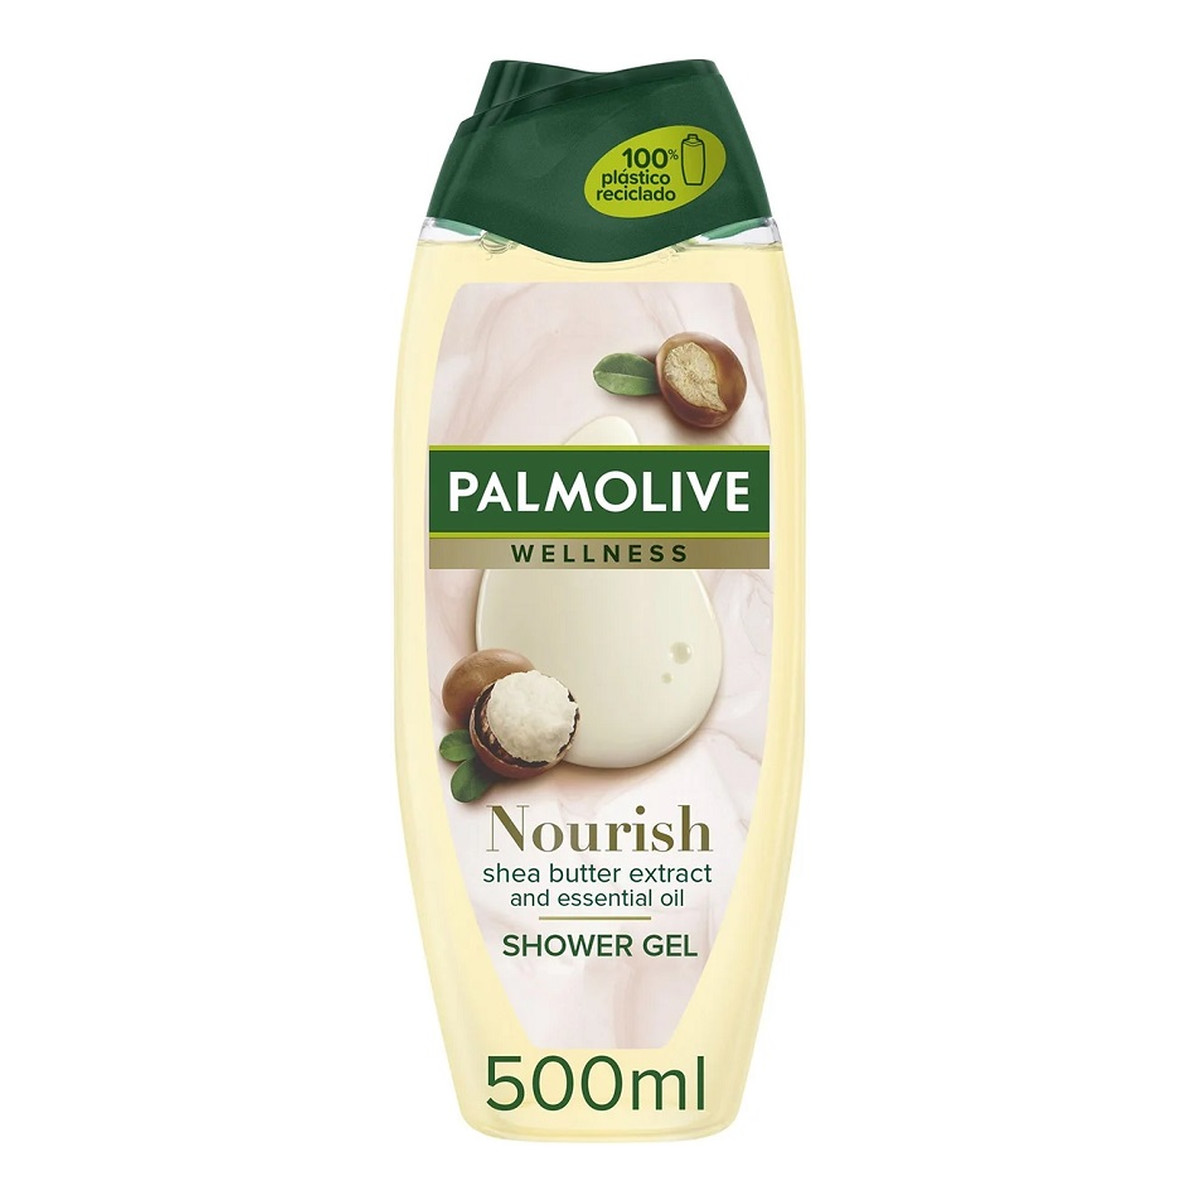 Palmolive Wellness Nourish Żel pod prysznic masło shea i olejek eteryczny 500ml